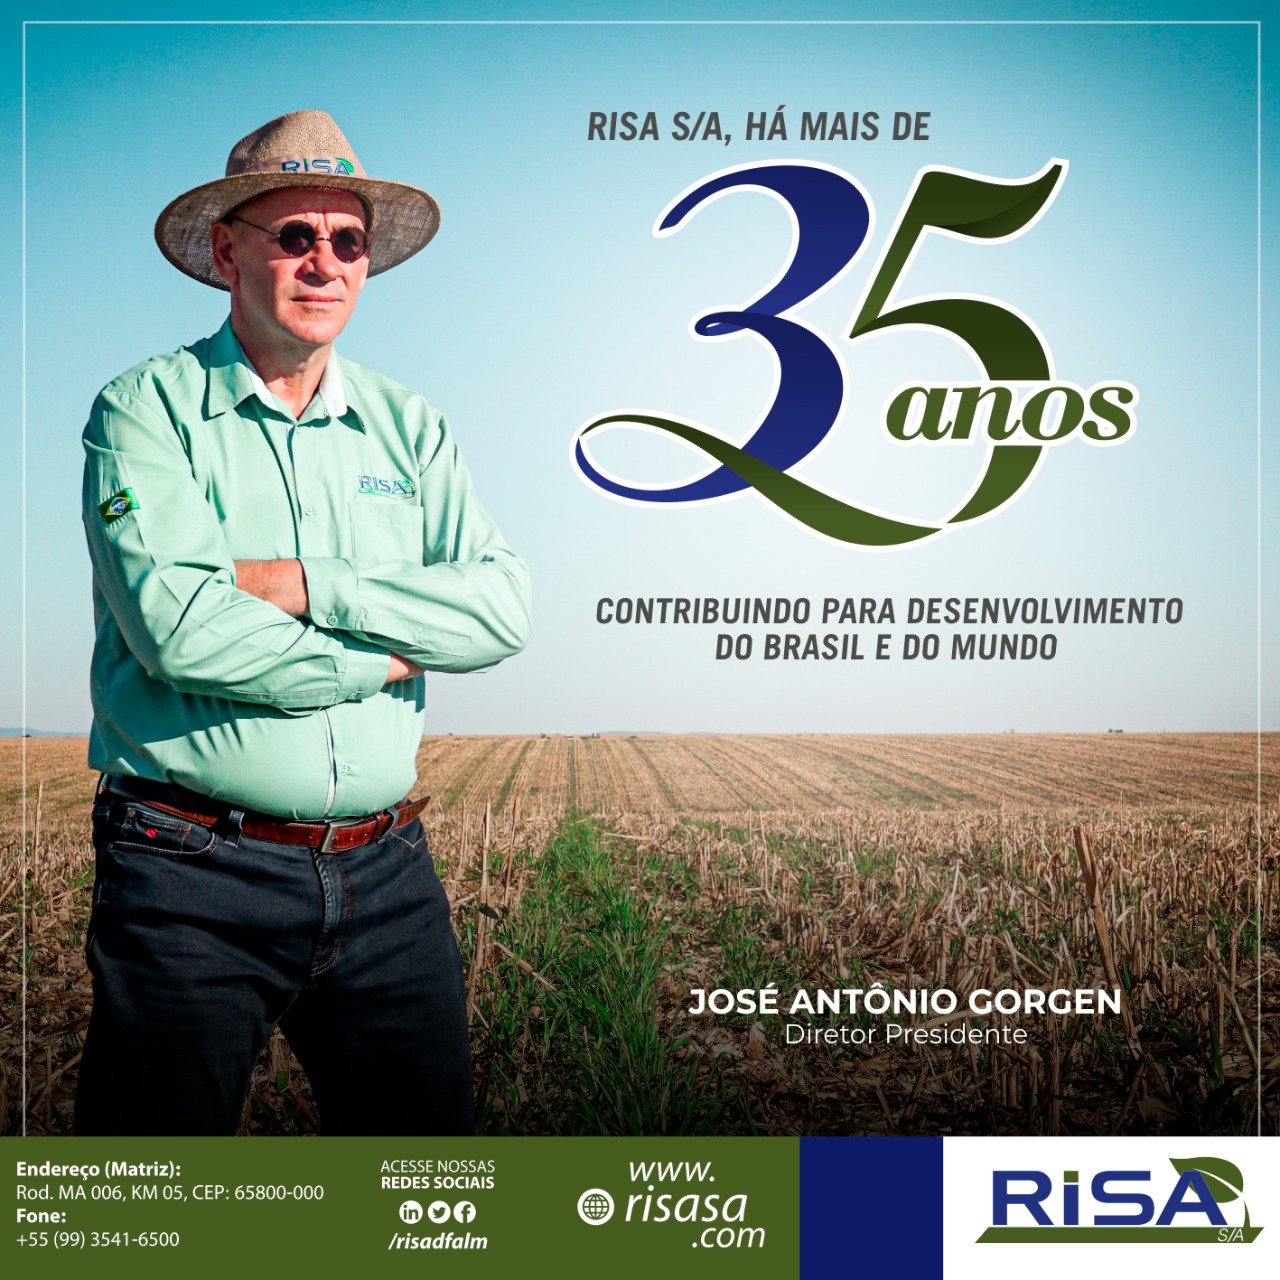 Risa S/A a mais de 35 anos contribuindo para o desenvolvimento do Brasil e do mundo.